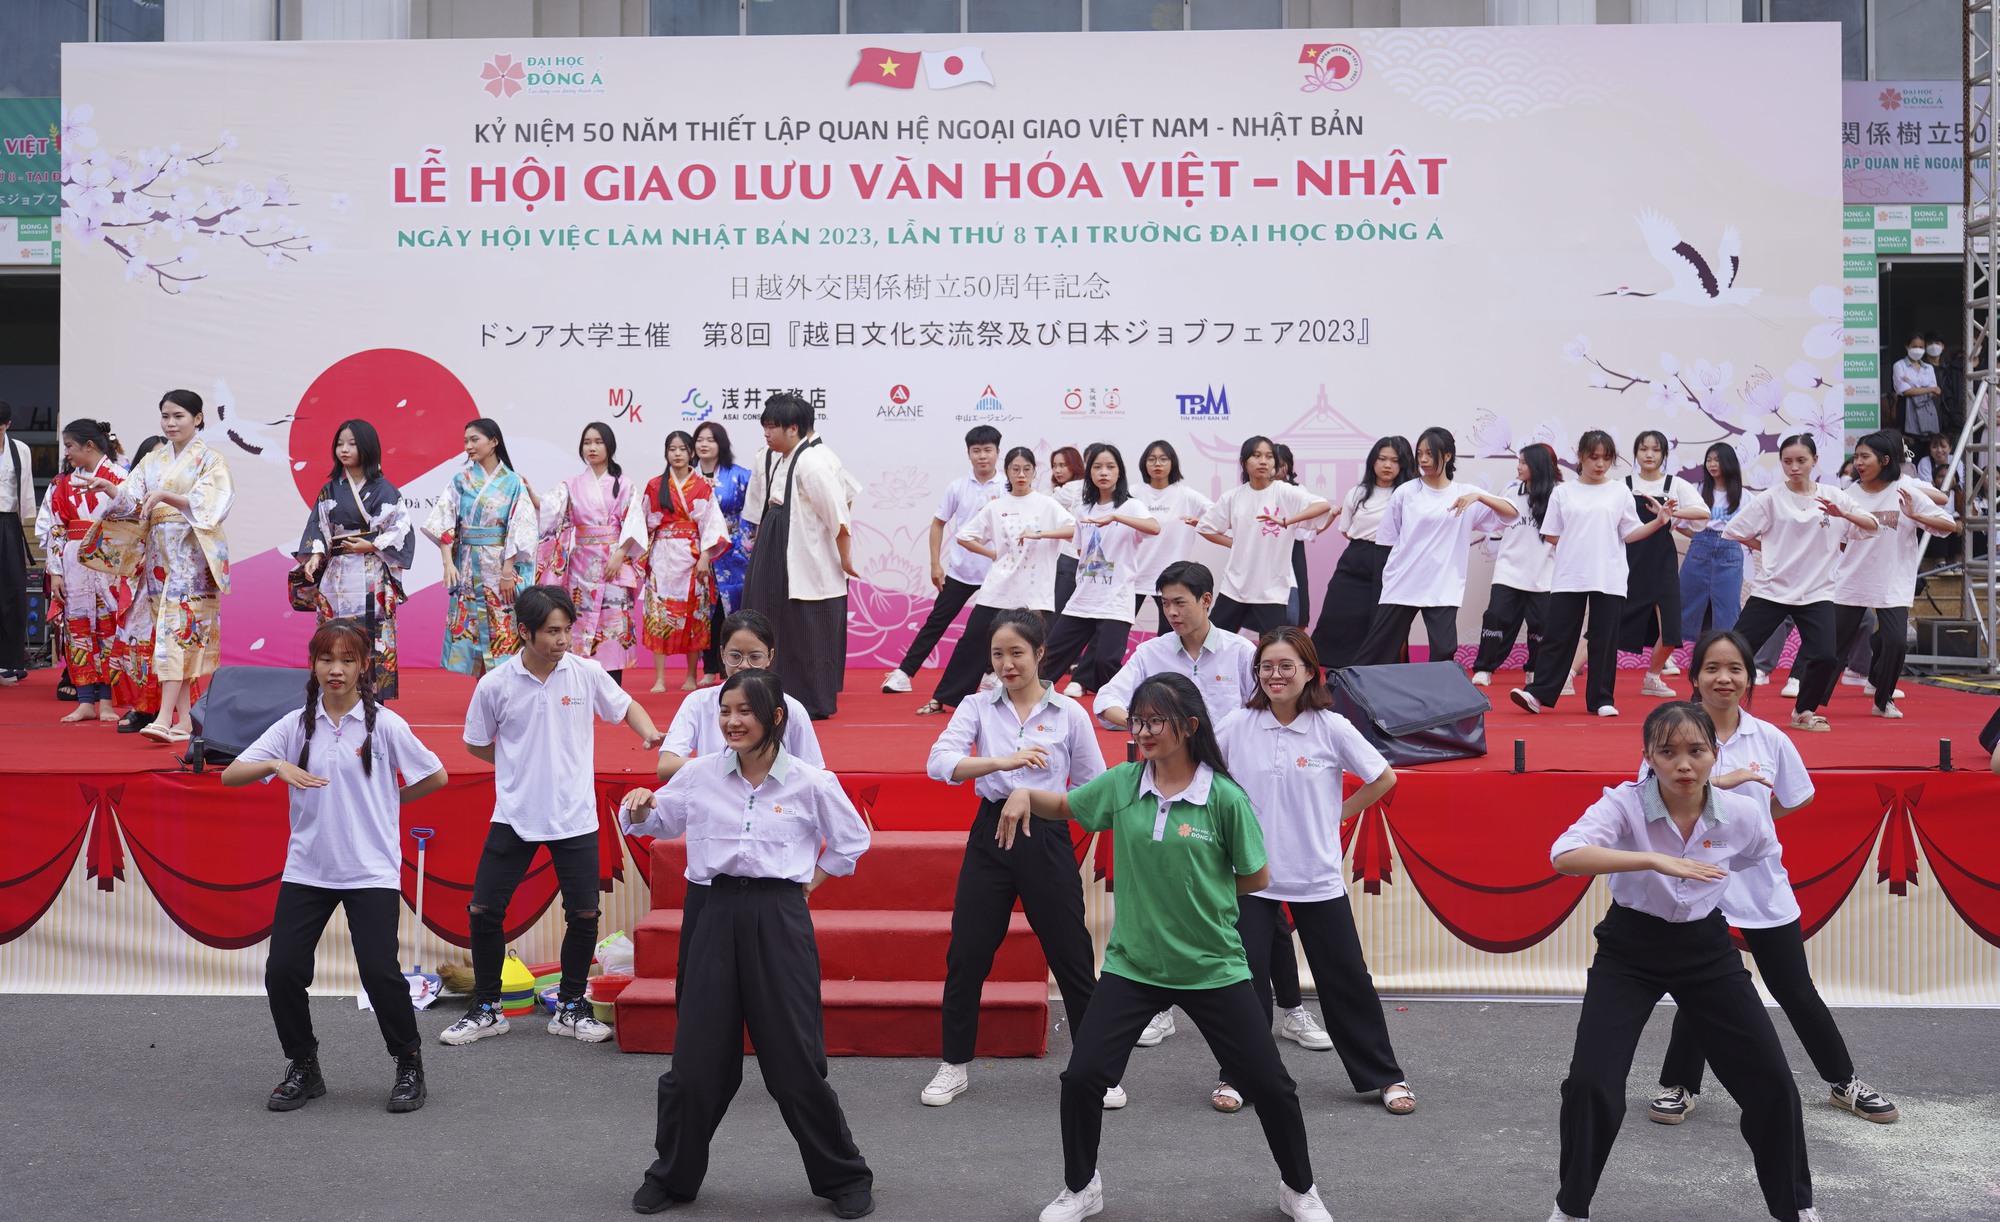 Nhiều hoạt động tại lễ hội giao lưu văn hóa Việt - Nhật